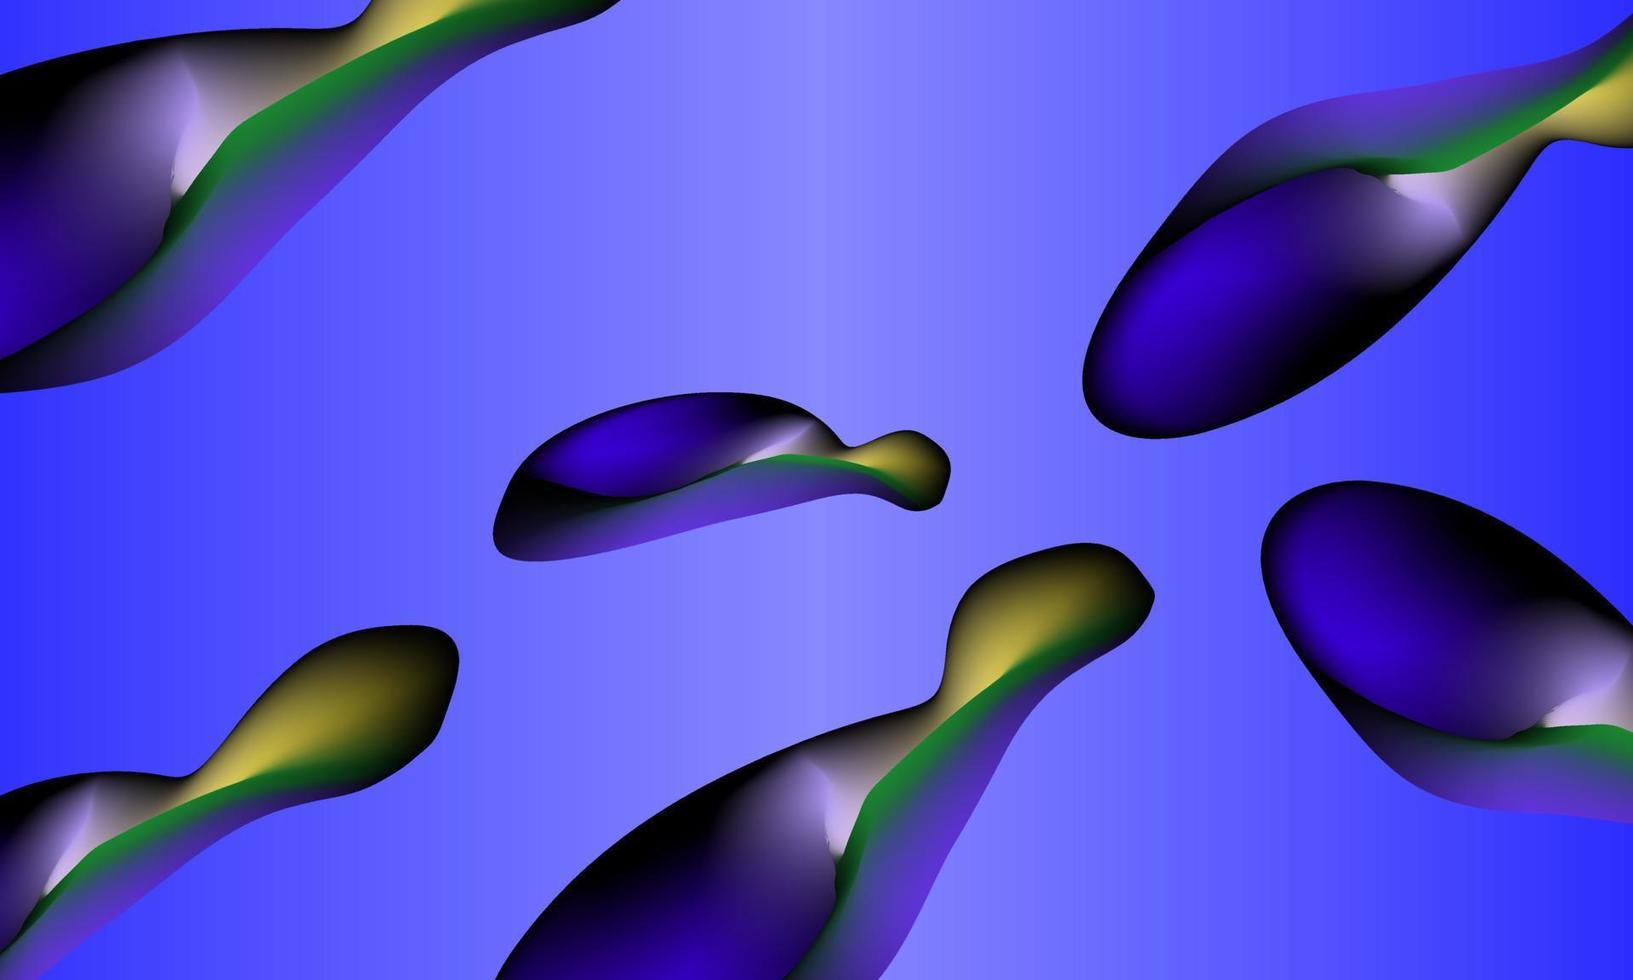 de färgrik böjd form är abstrakt illustrerade på en blå bakgrund. vektor